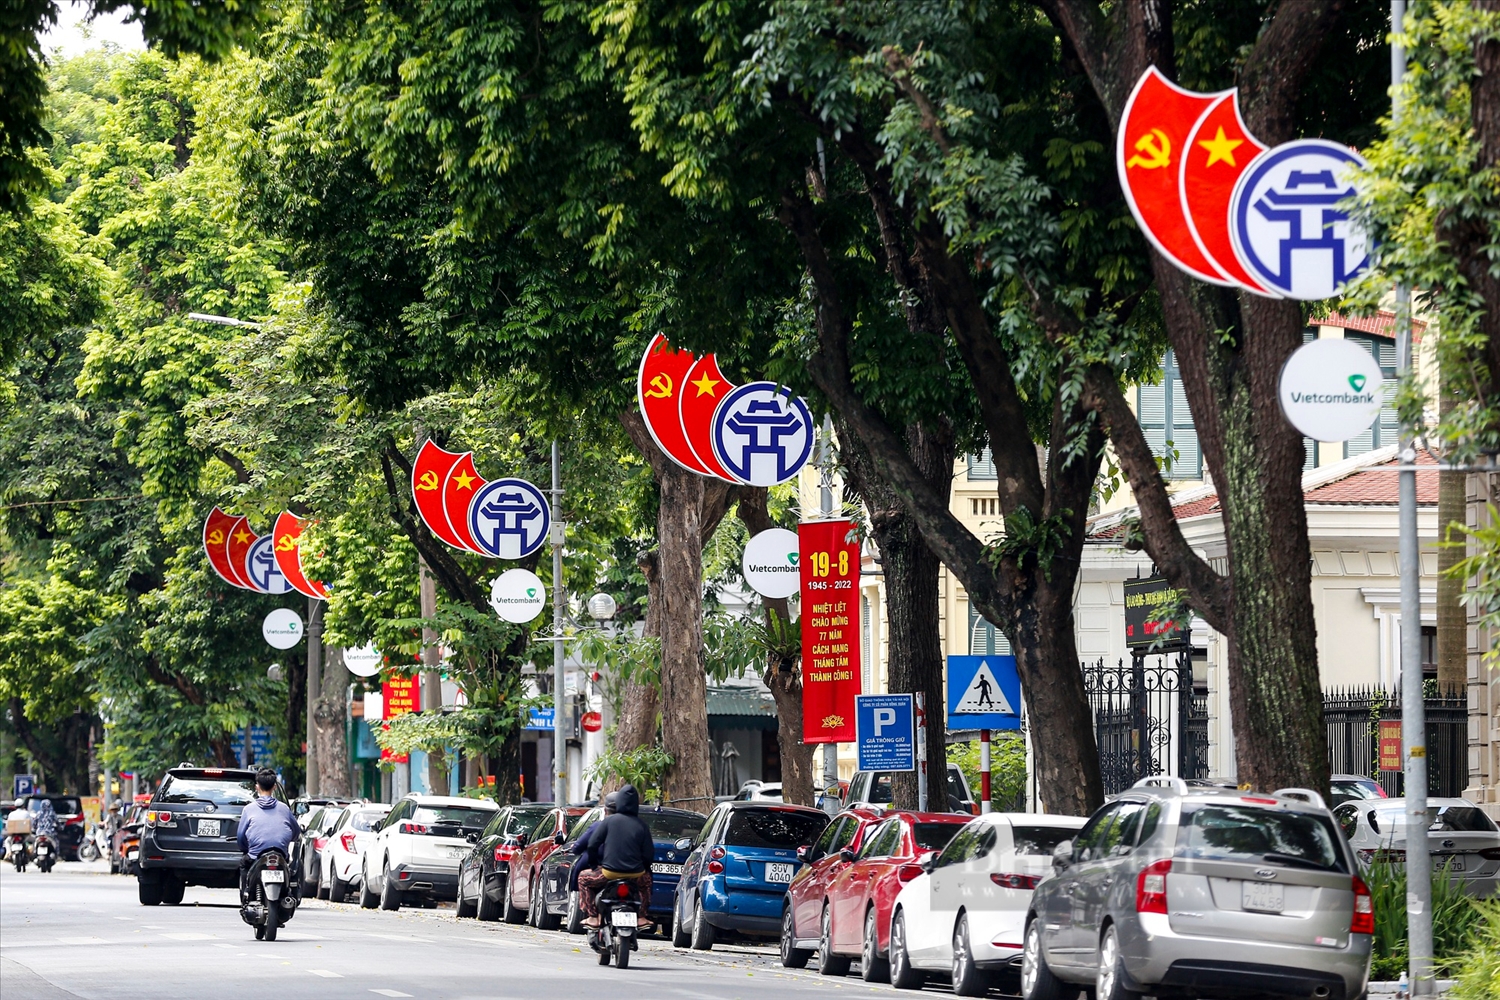 Phố Ngô Quyền (quận Hoàn Kiếm) trang hoàng bởi các cụm trang trí biểu tượng Hà Nội gắn với cờ Tổ quốc và cờ Đảng.